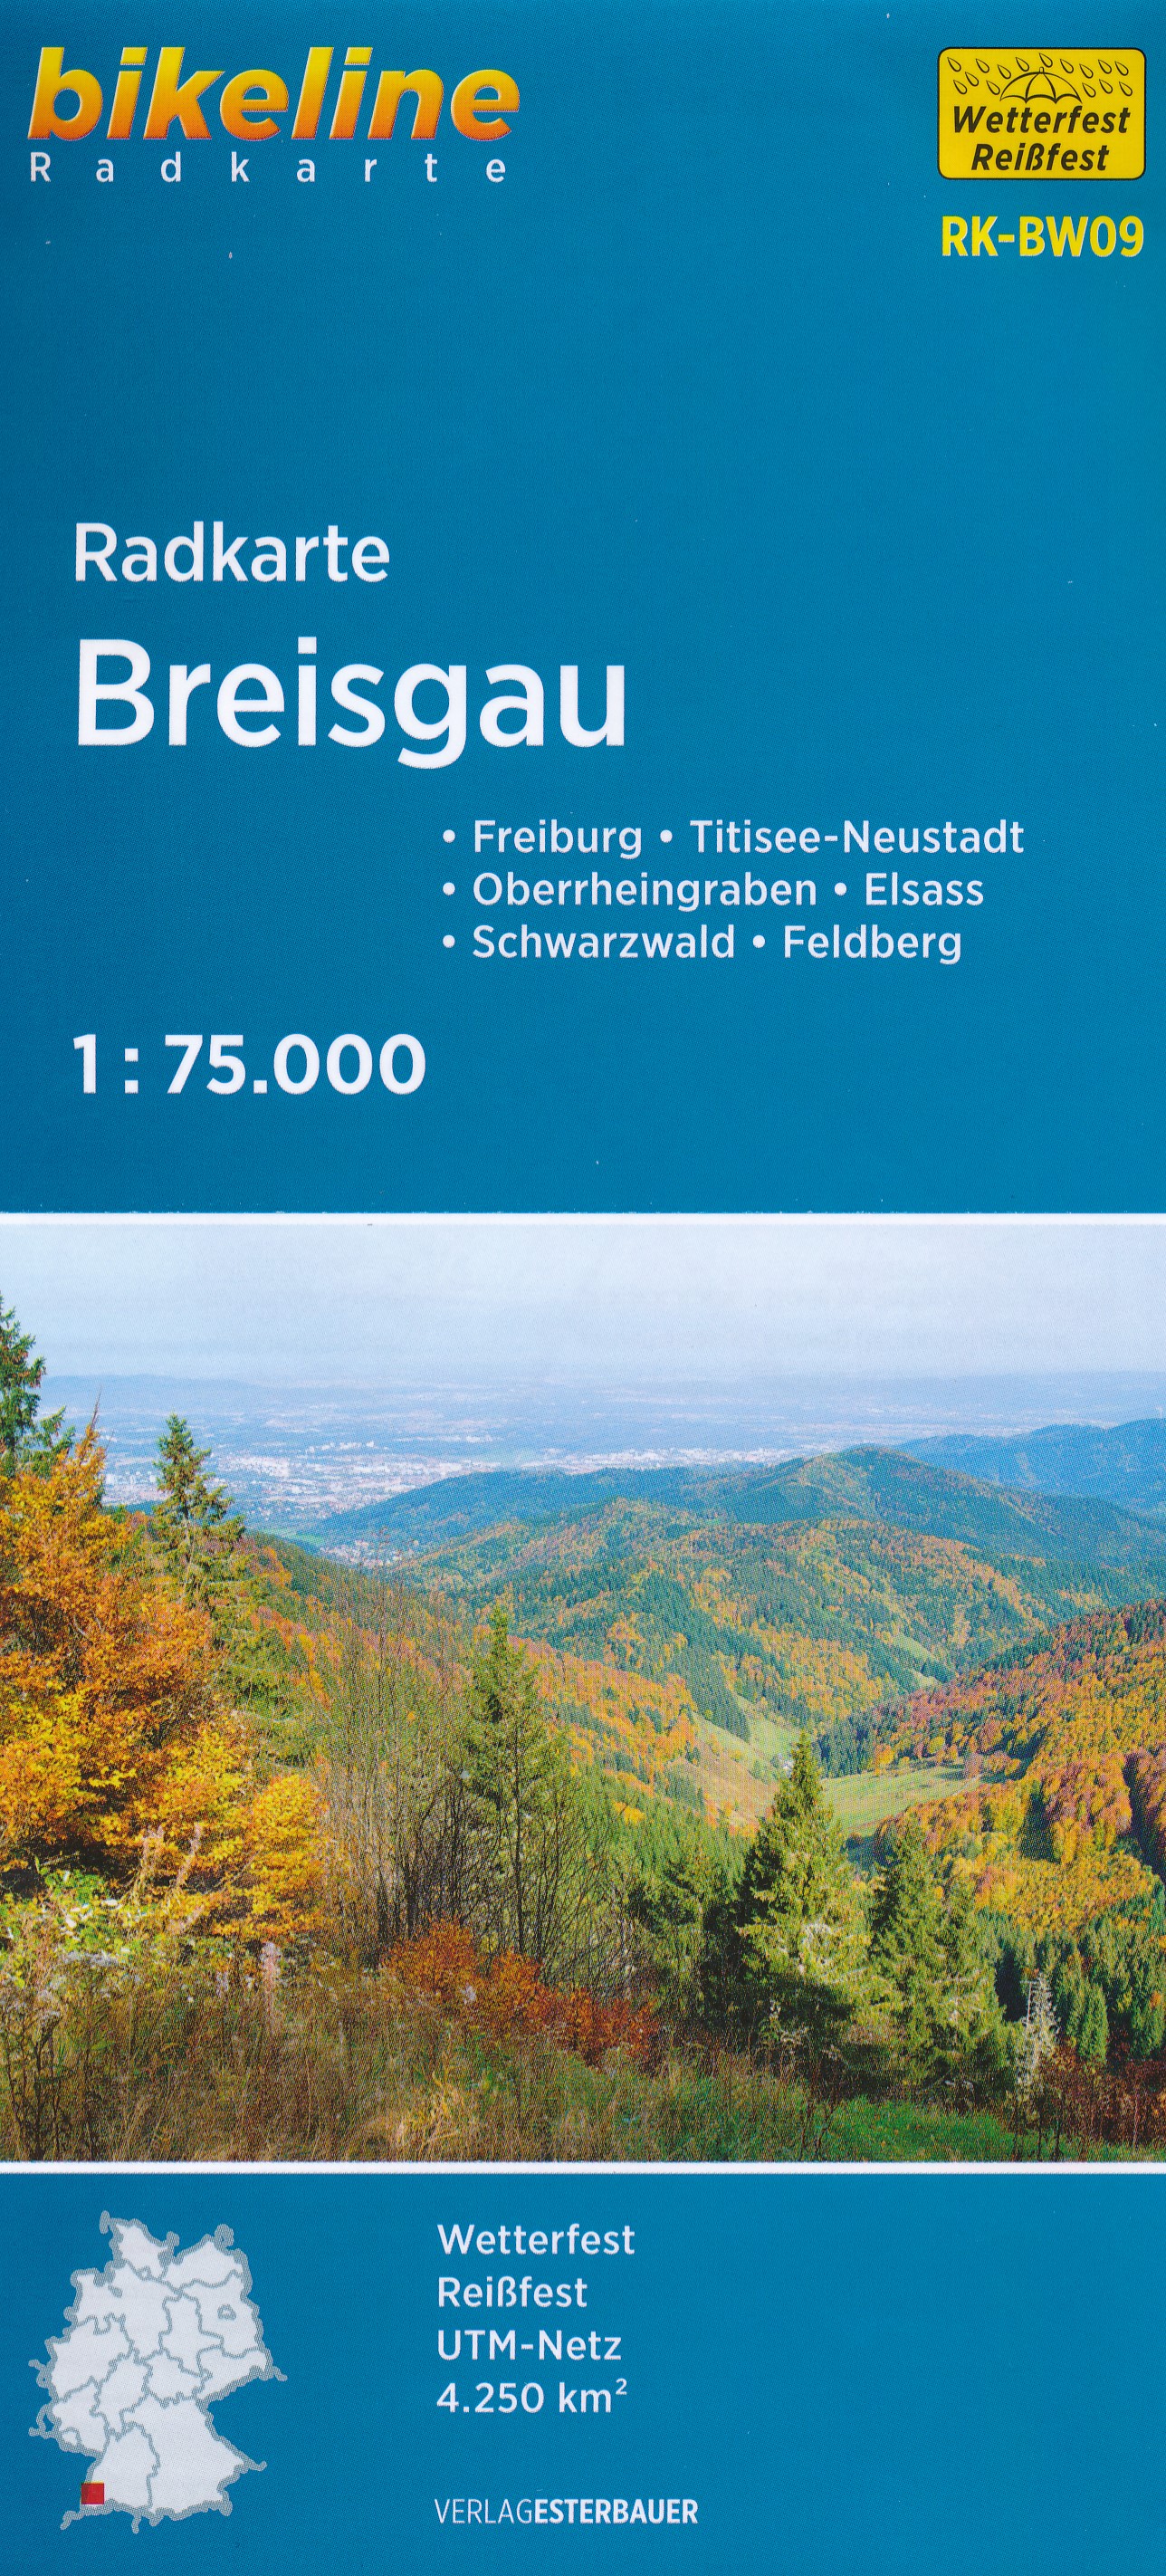 Online bestellen: Fietskaart BW09 Bikeline Radkarte Breisgau | Esterbauer